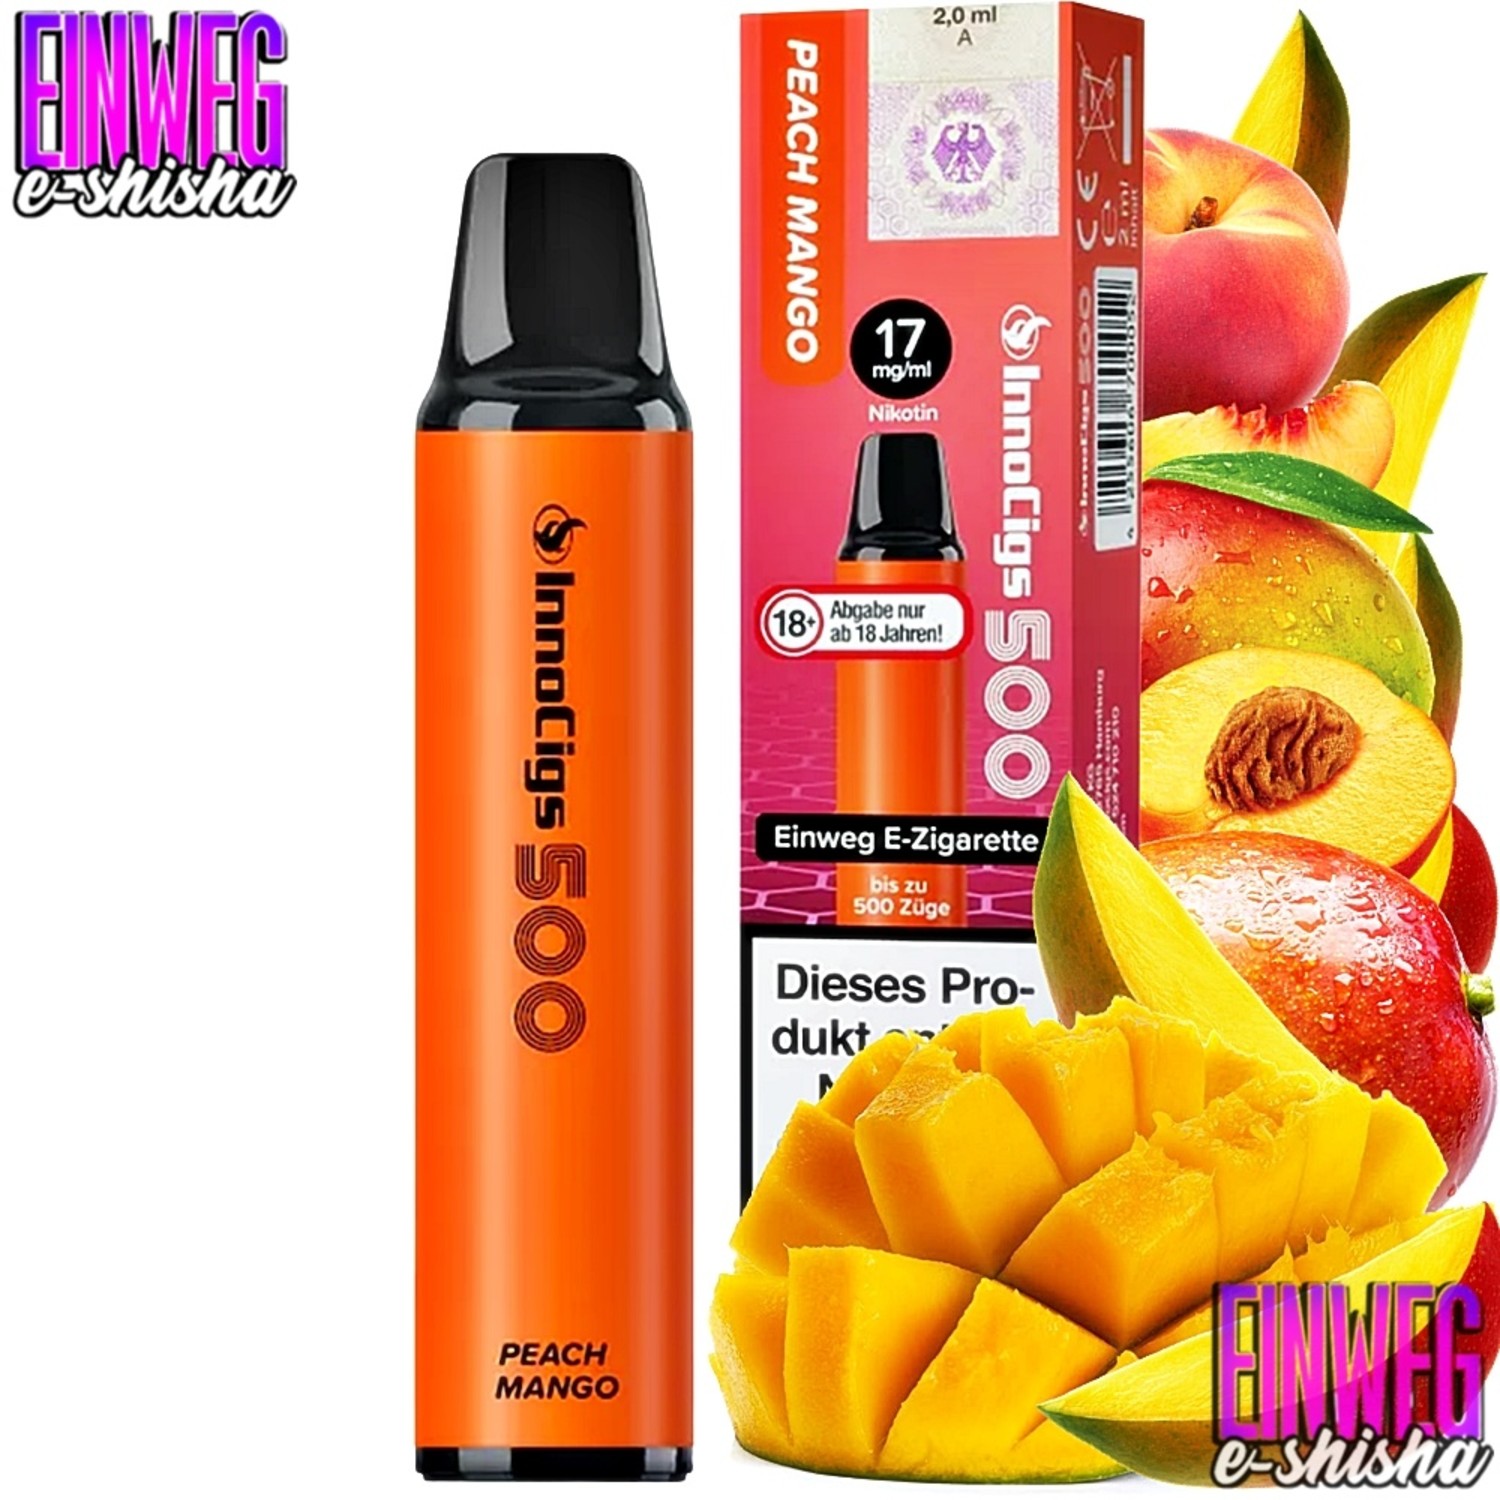 InnoCigs 500 - Peach Mango - 500 Züge / Nikotin 17 mg 